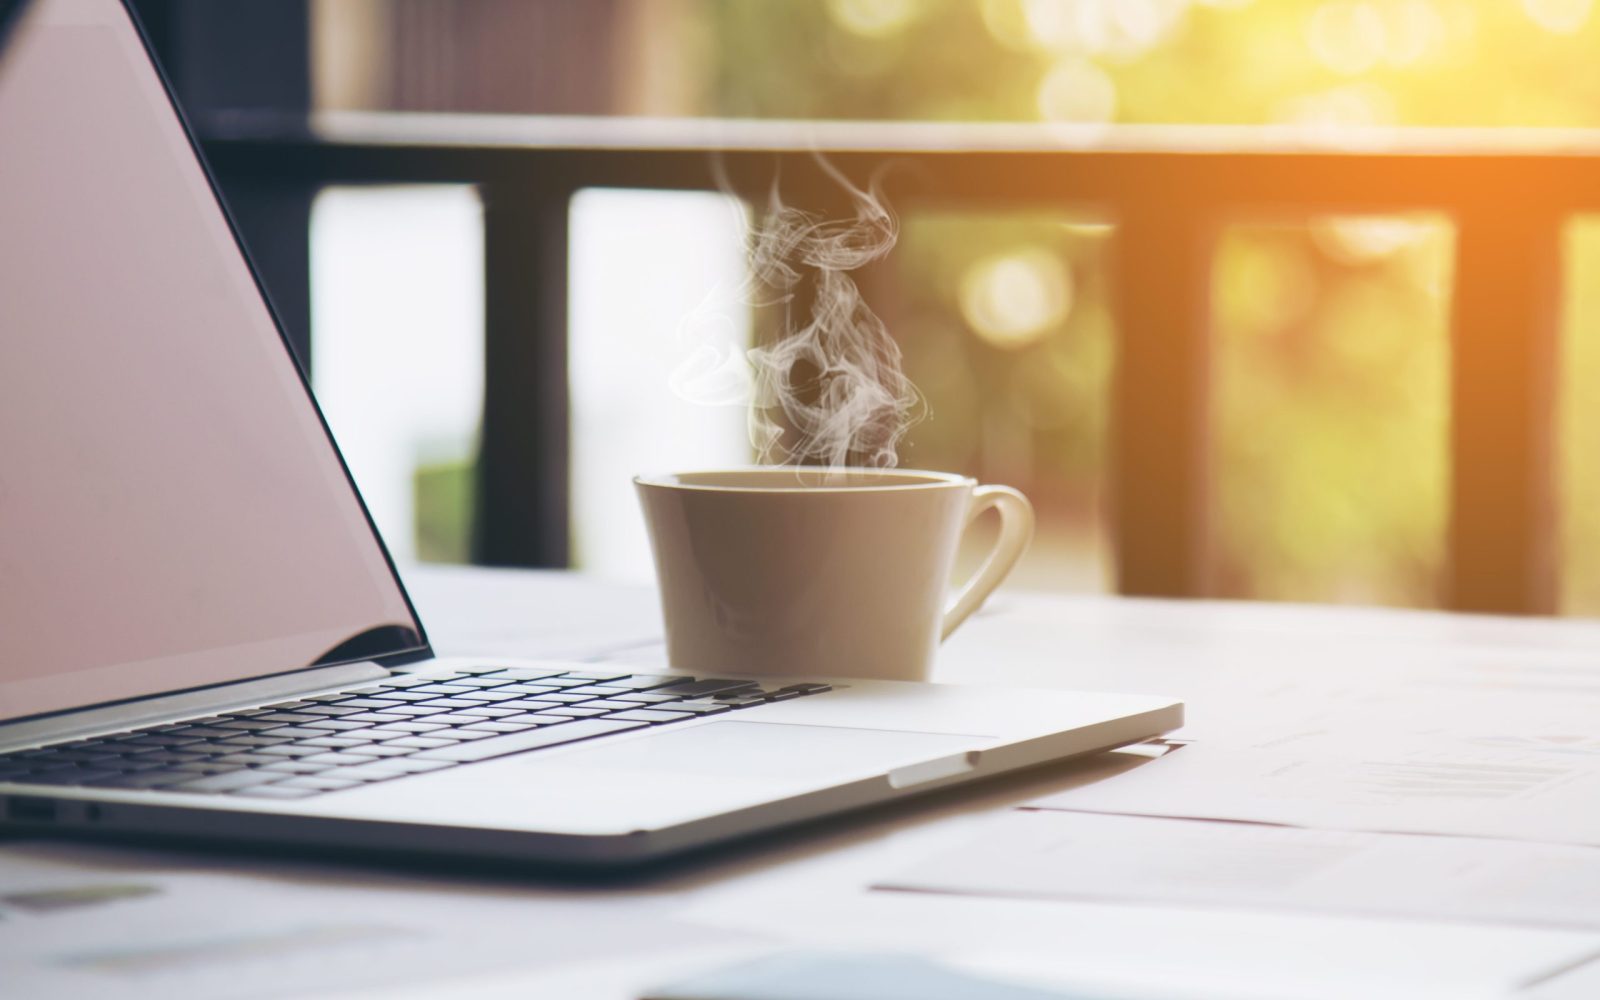 gőzölgő kávé egy laptop mellett egy teraszon